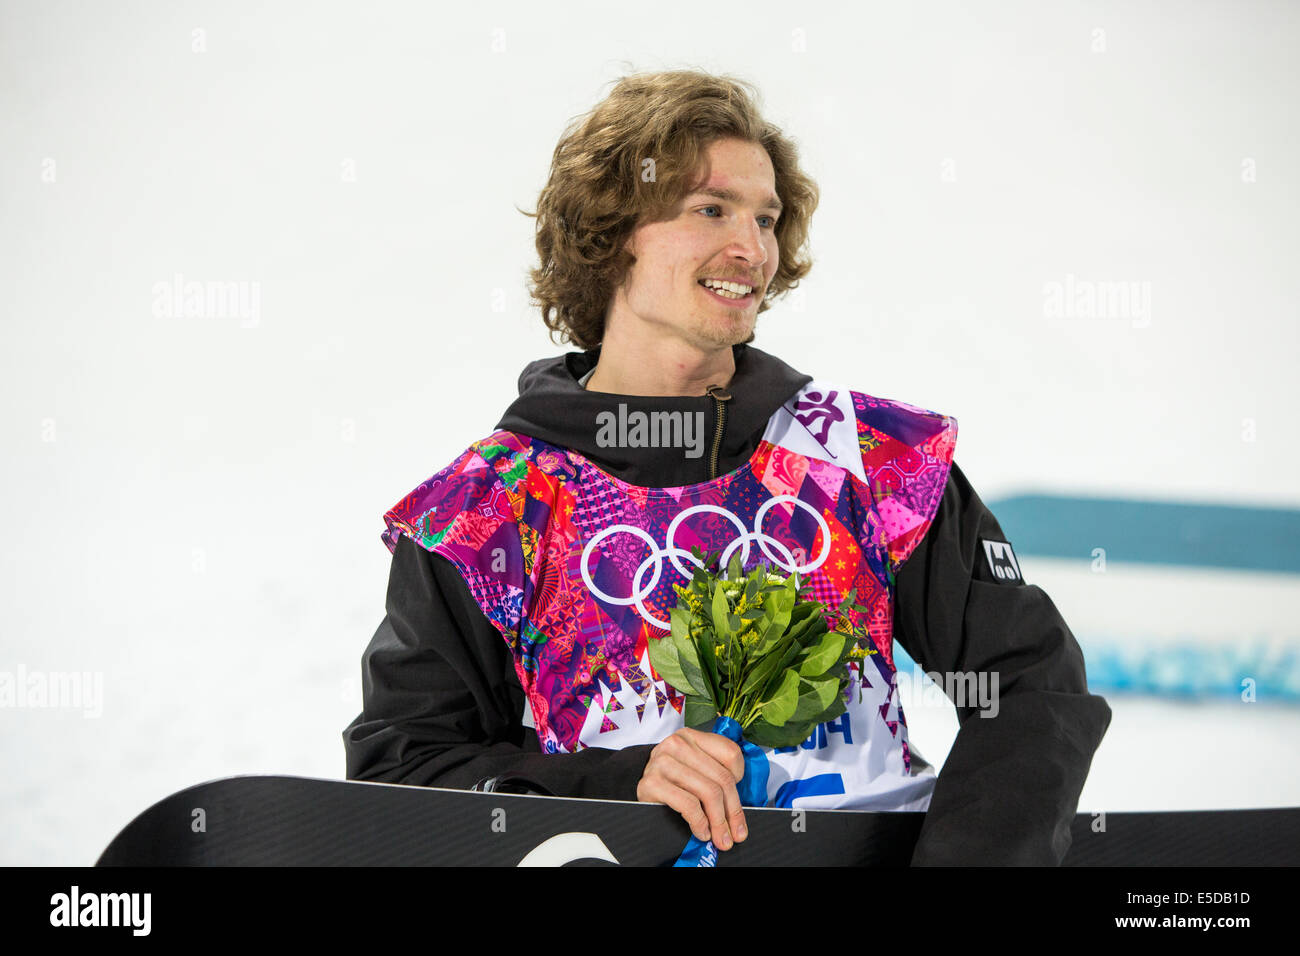 médailles de ski d'Anthony - Cricri créations